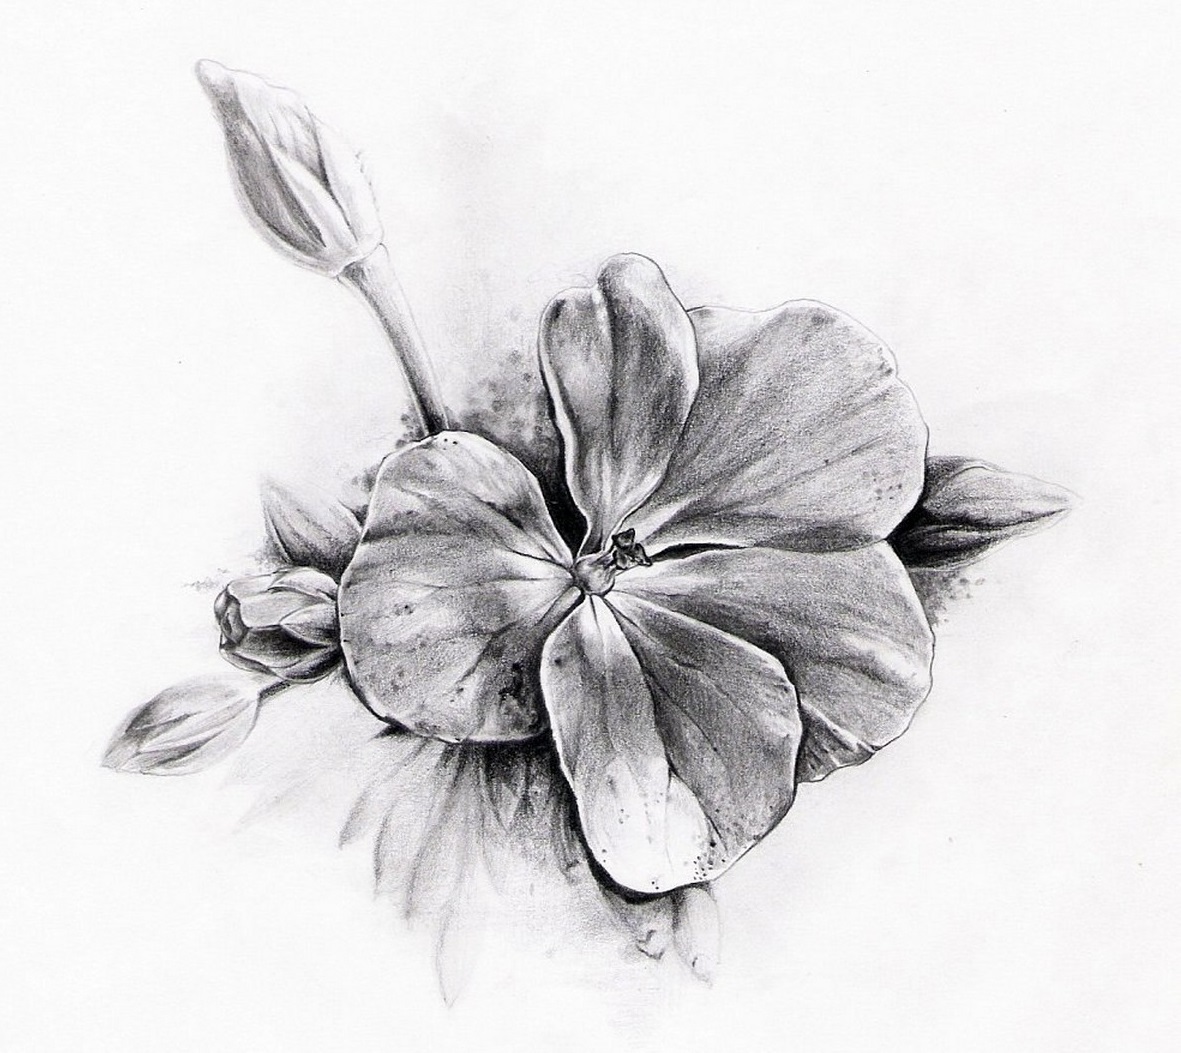 Σκίτσο ενός μικρού τατουάζ με τη μορφή ενός λουλουδιού